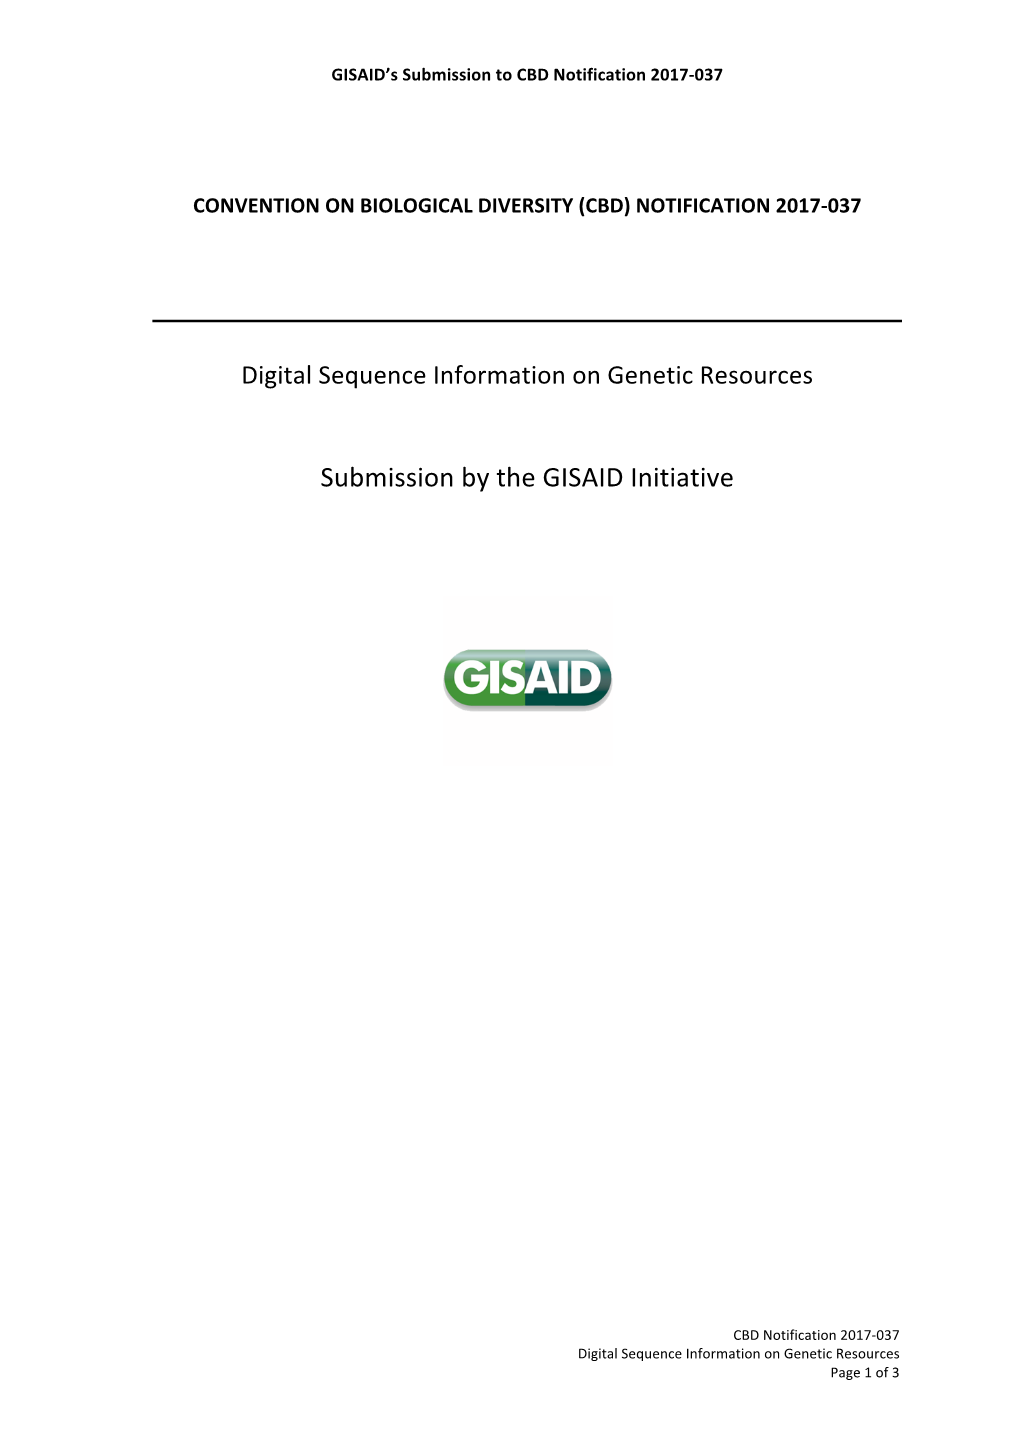 Global Initiative on Sharing All Influenza Data (GISAID Initiative)